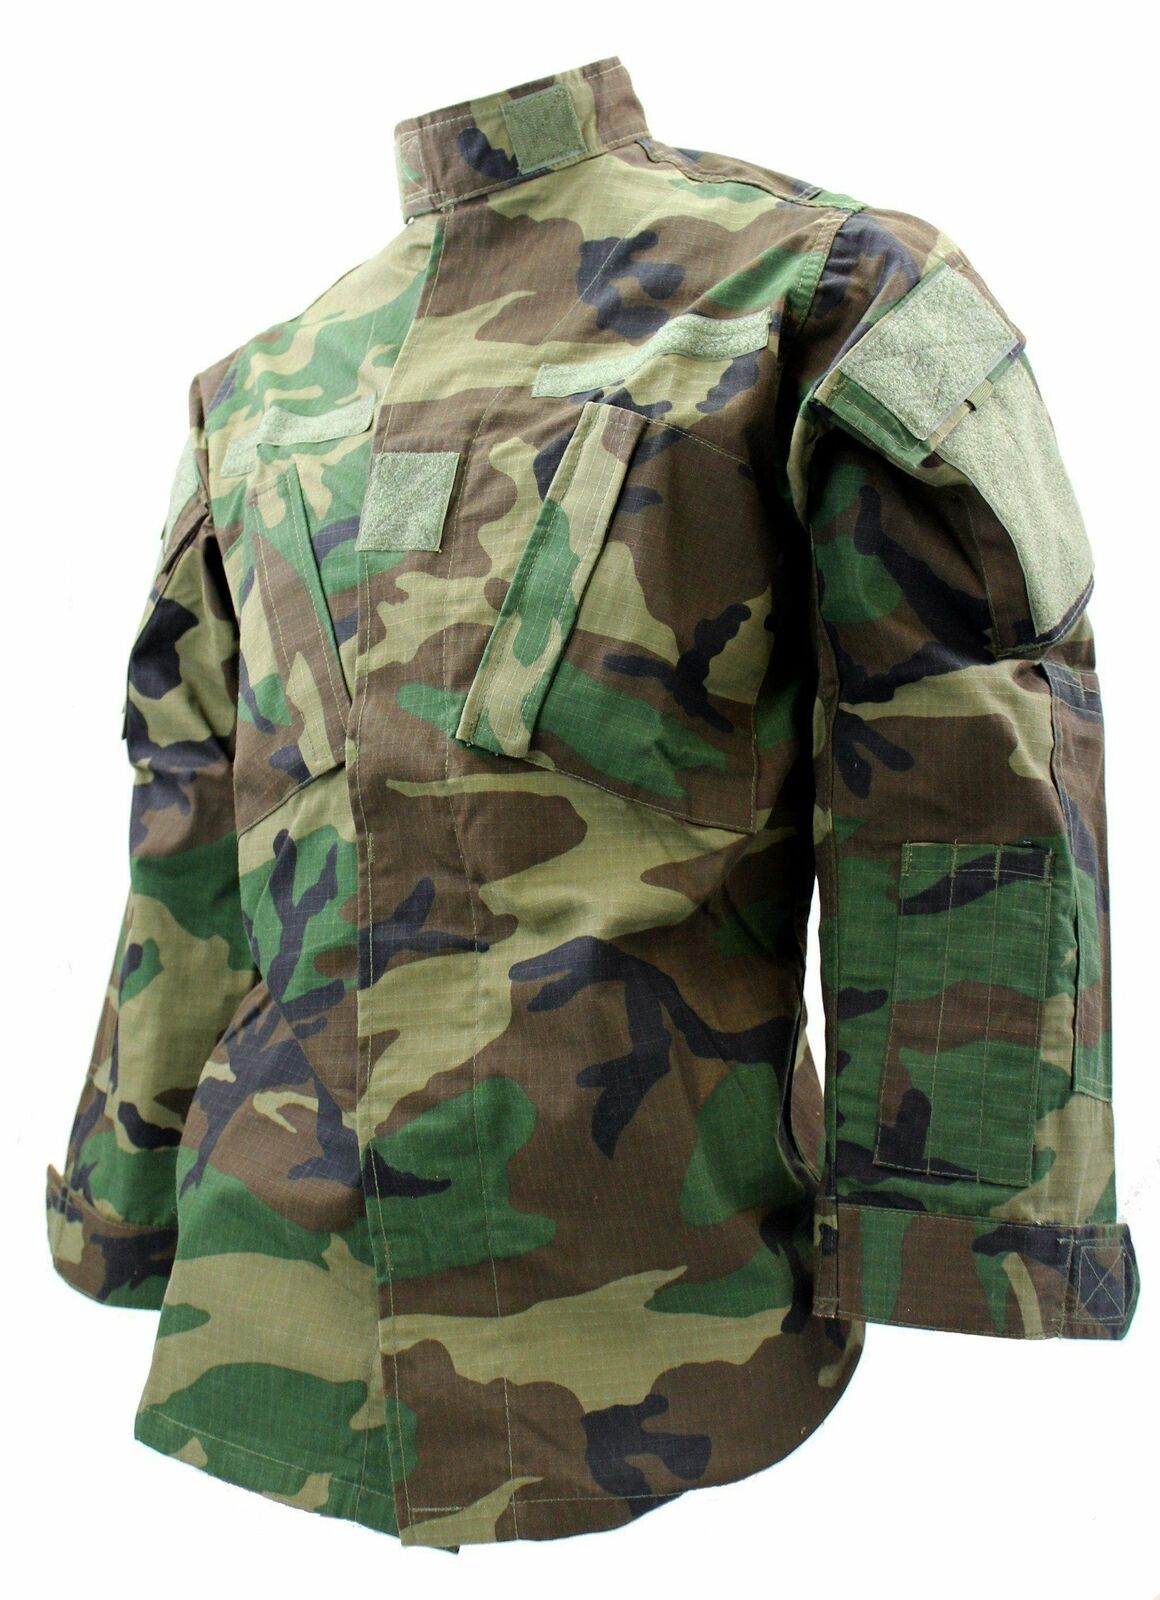 Woodland Camo BDU Army Jacket - Medium